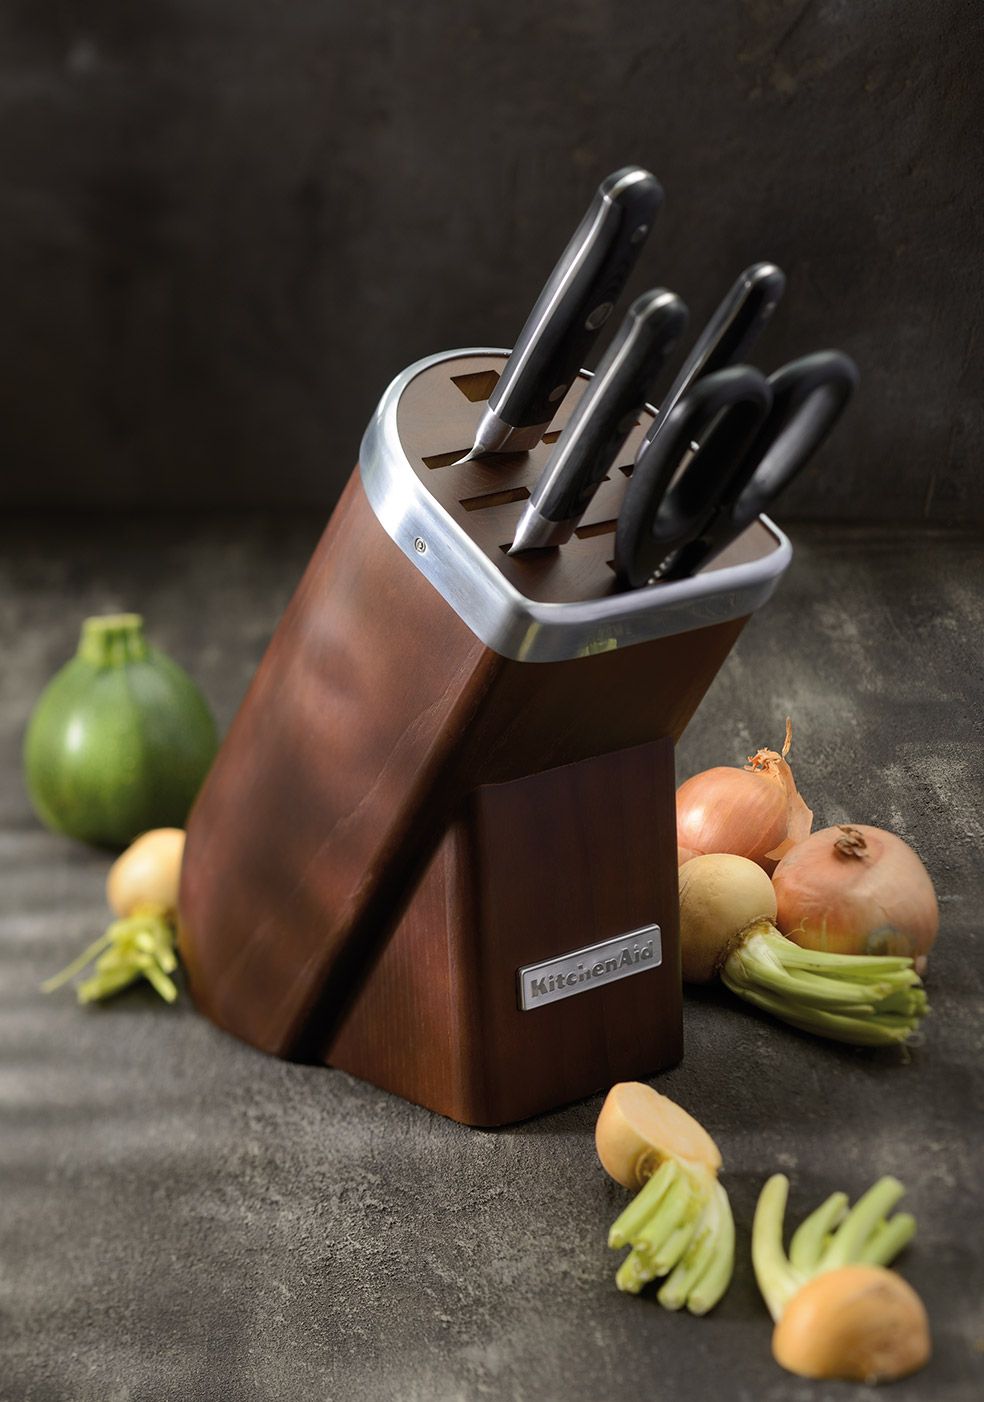 KitchenAid kitchenware Tools